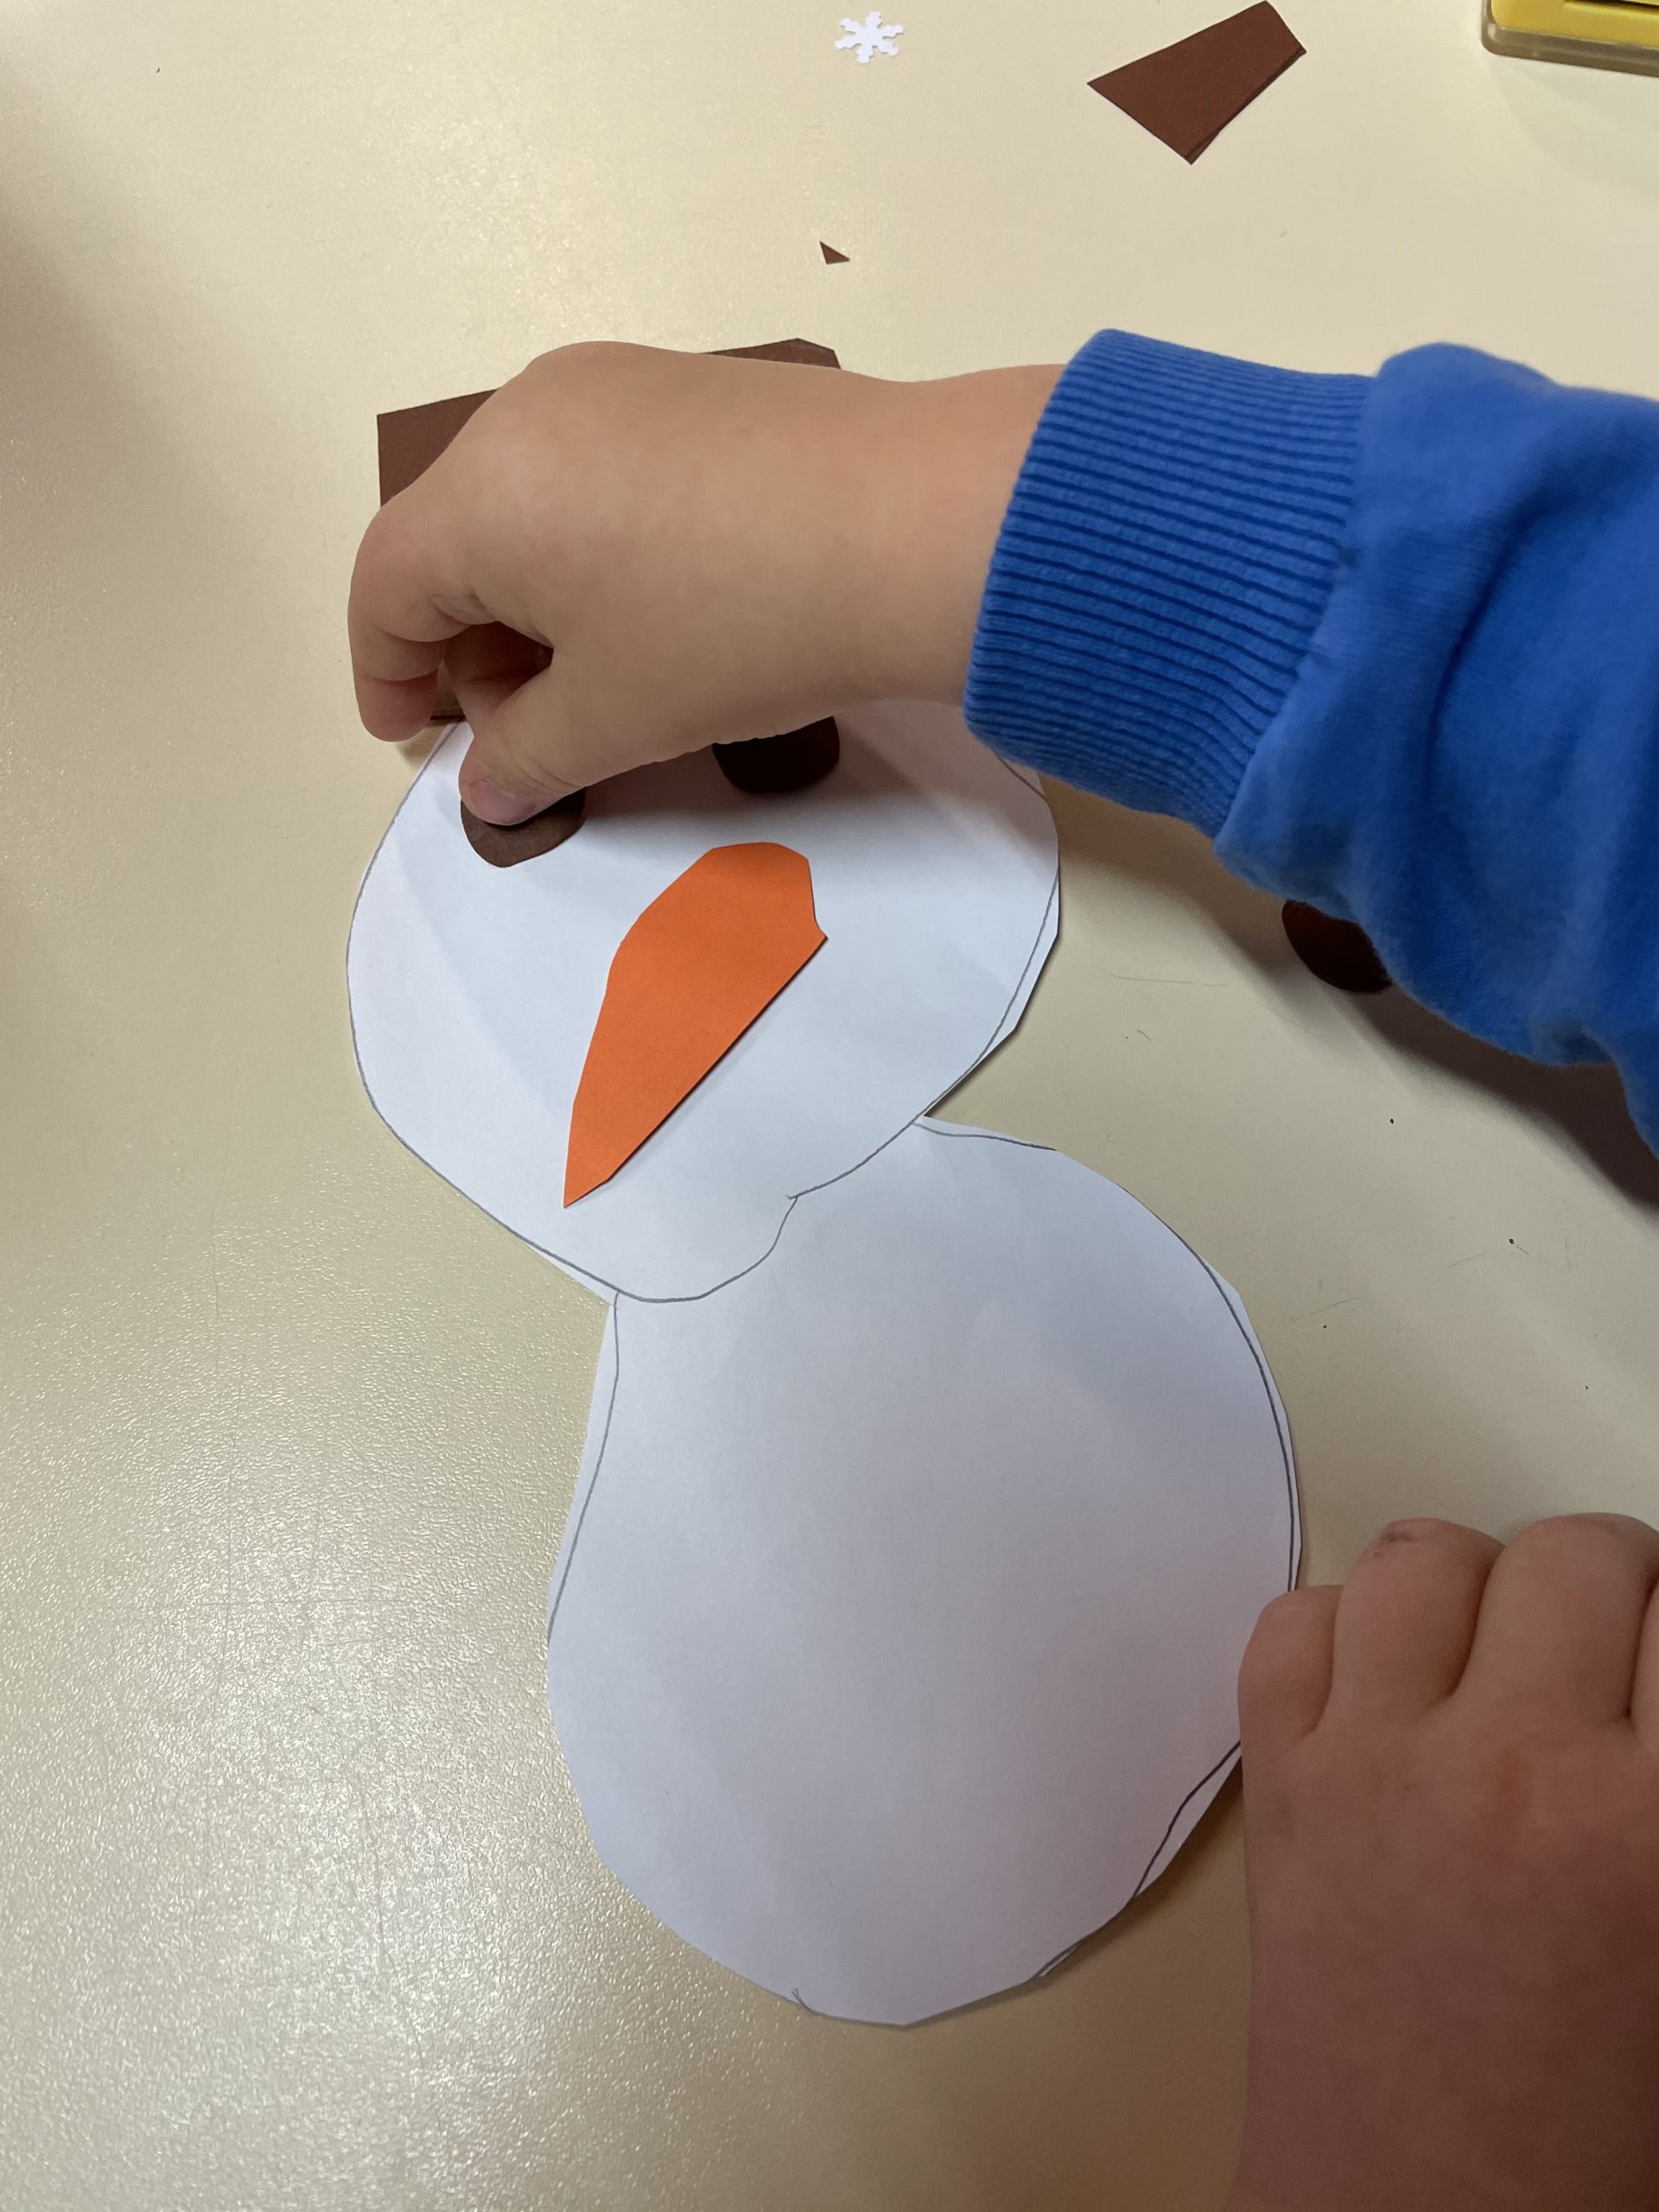 3. Bild zum Schritt 4 für die Kinder-Beschäftigung: 'Sind alle Einzelteile ausgeschnitten, dann legt sie zu einem Schneemann...'